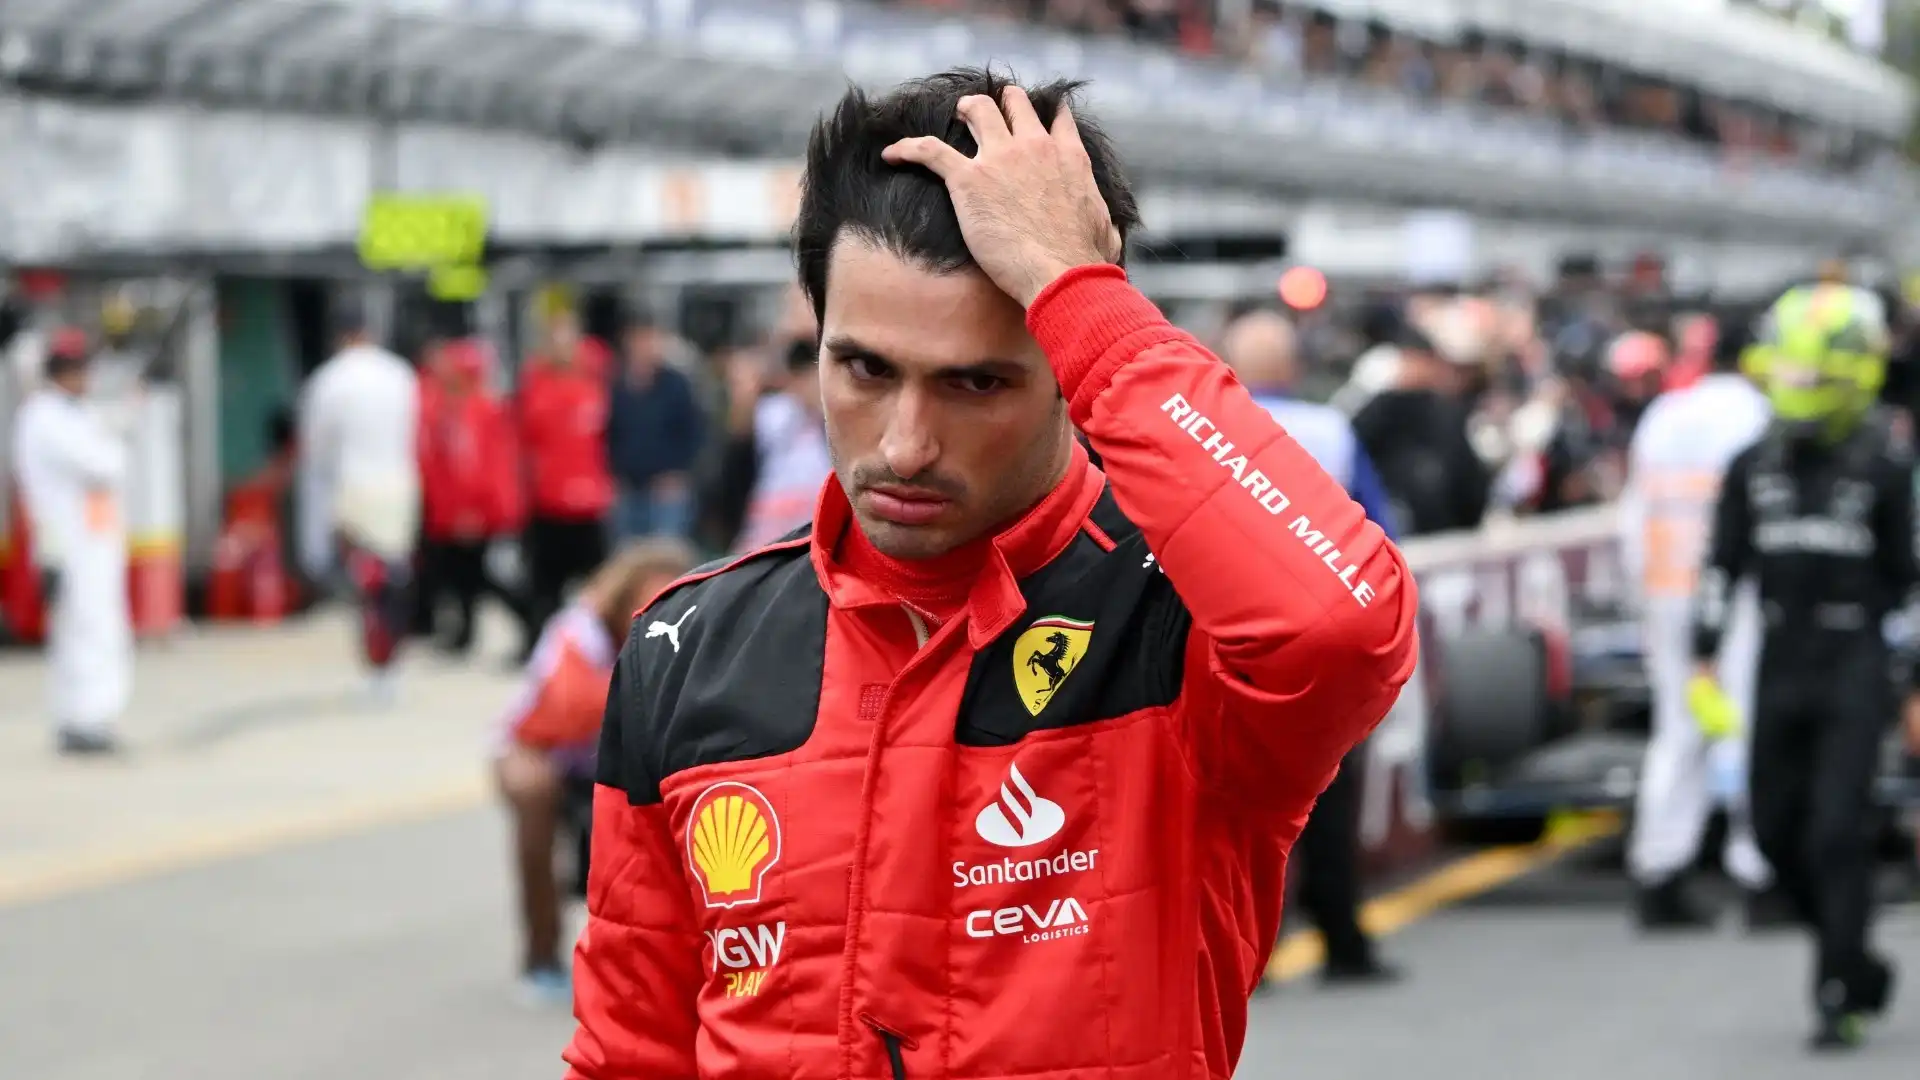 Carlos Sainz non parla in Messico, la Ferrari: “Non si sente bene”